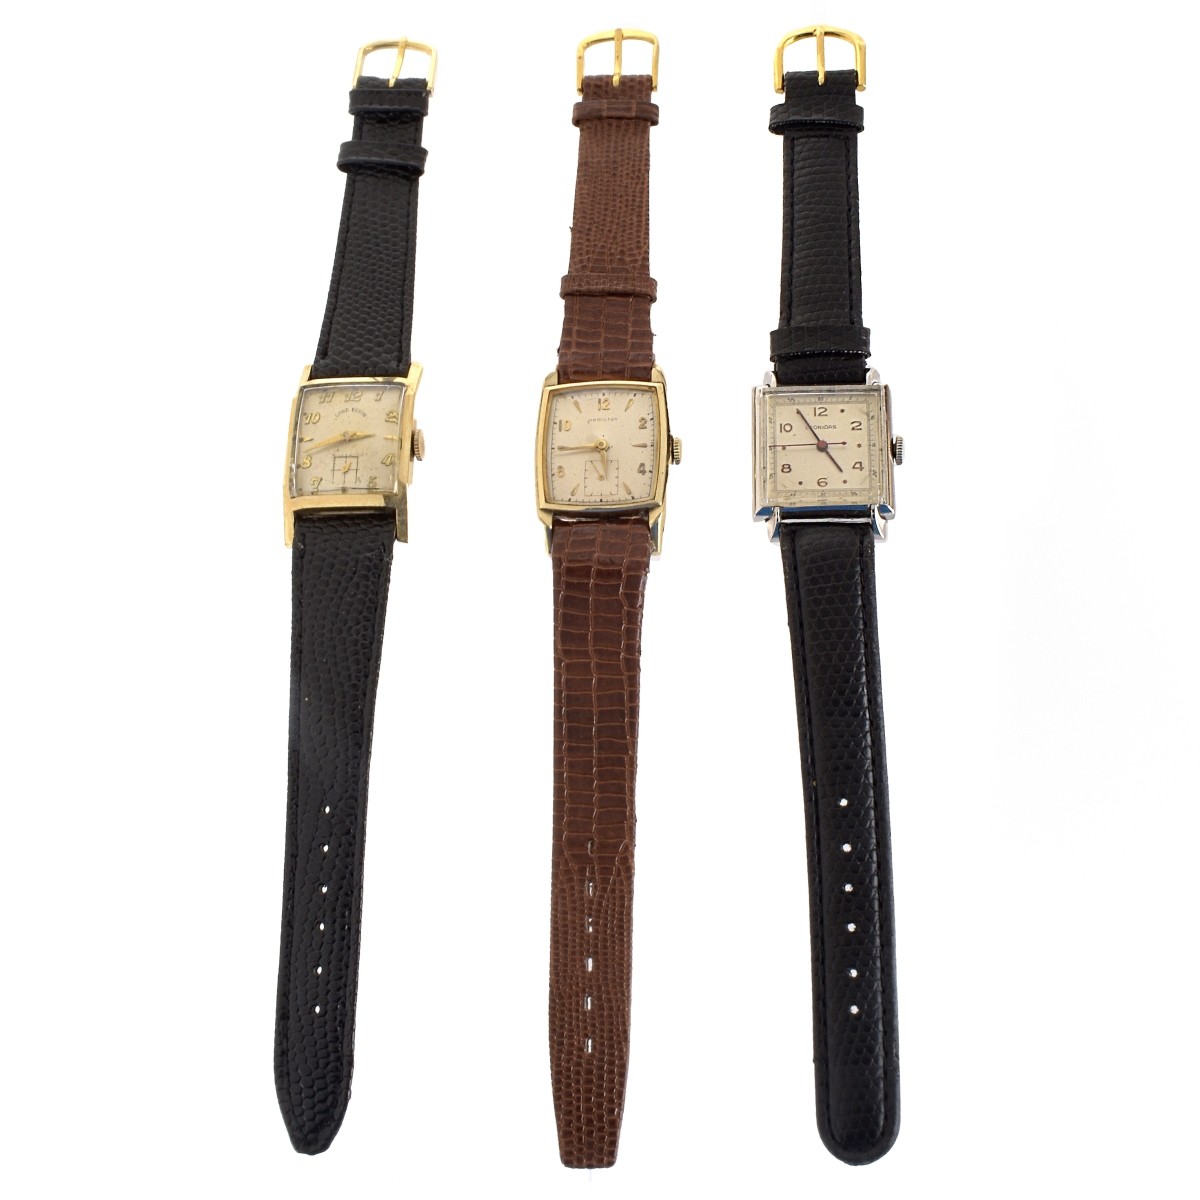 Three Vintage Watches